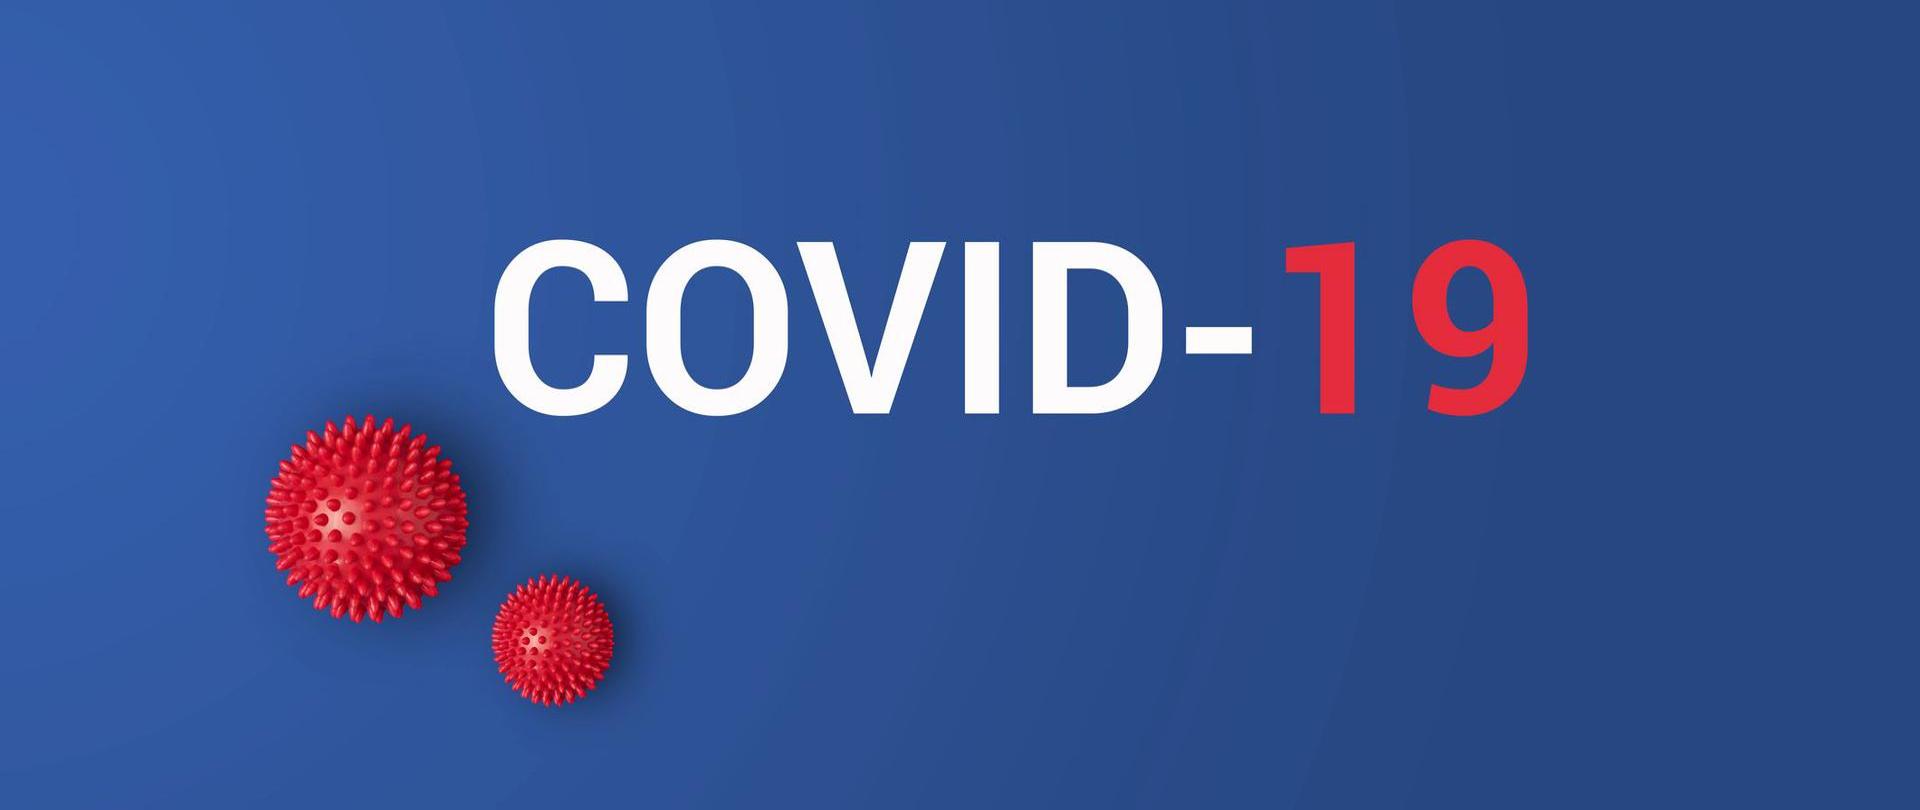 Logotyp. Na niebieskim tle biały napis COVID-19.